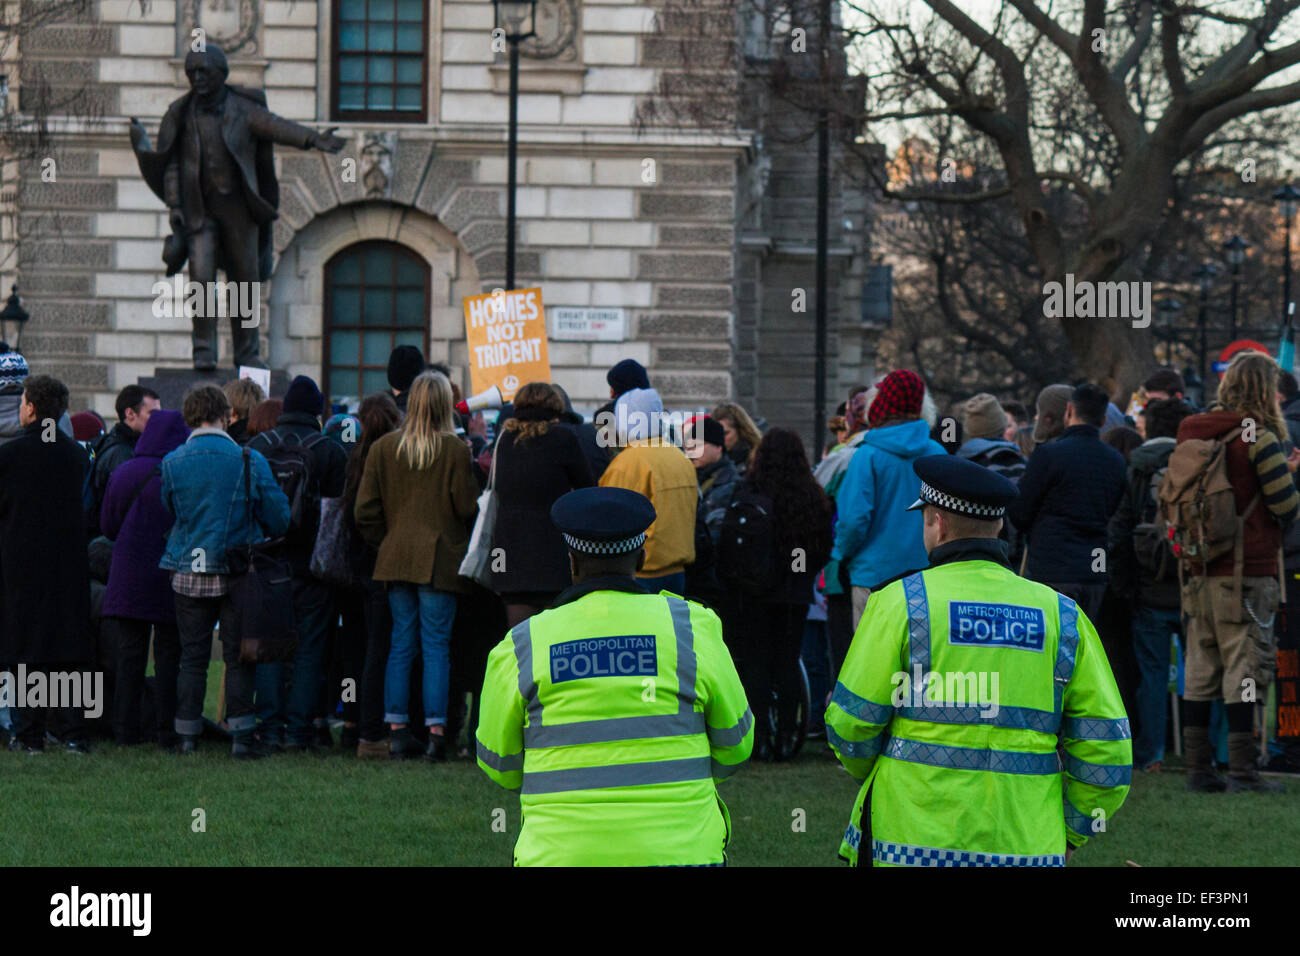 El 24 de enero de 2014, Londres. Los manifestantes demuestran su derecho a protestar en la Plaza del Parlamento durante el ocupar la democracia. Foto de stock